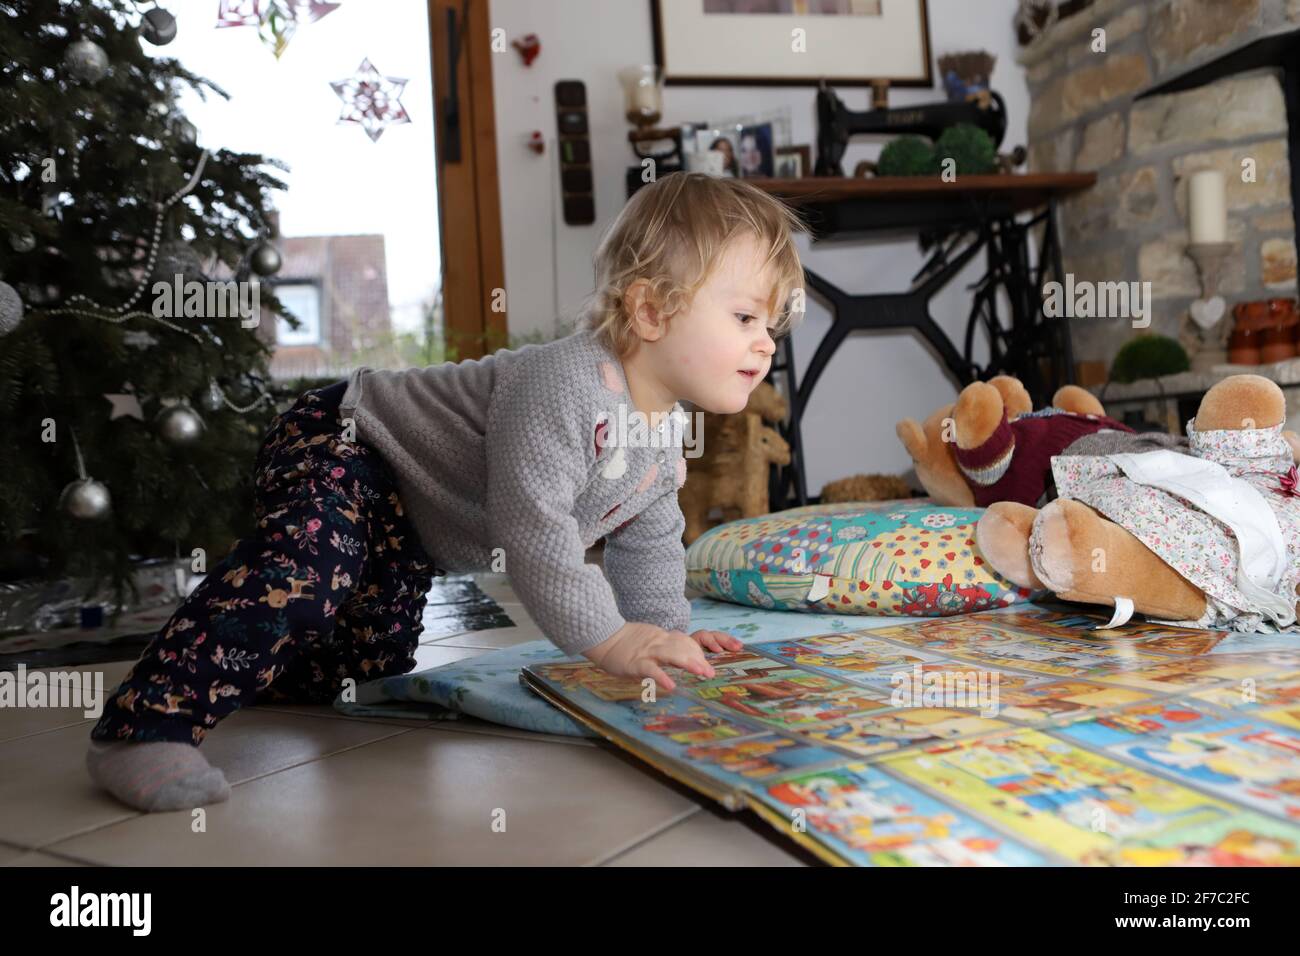 kleines Mädchen betrachtet auf dem Boden des Wohnzimmers ein großes Bilderbuch - niña mirando un gran libro de fotos el piso de la sala de estar Foto de stock